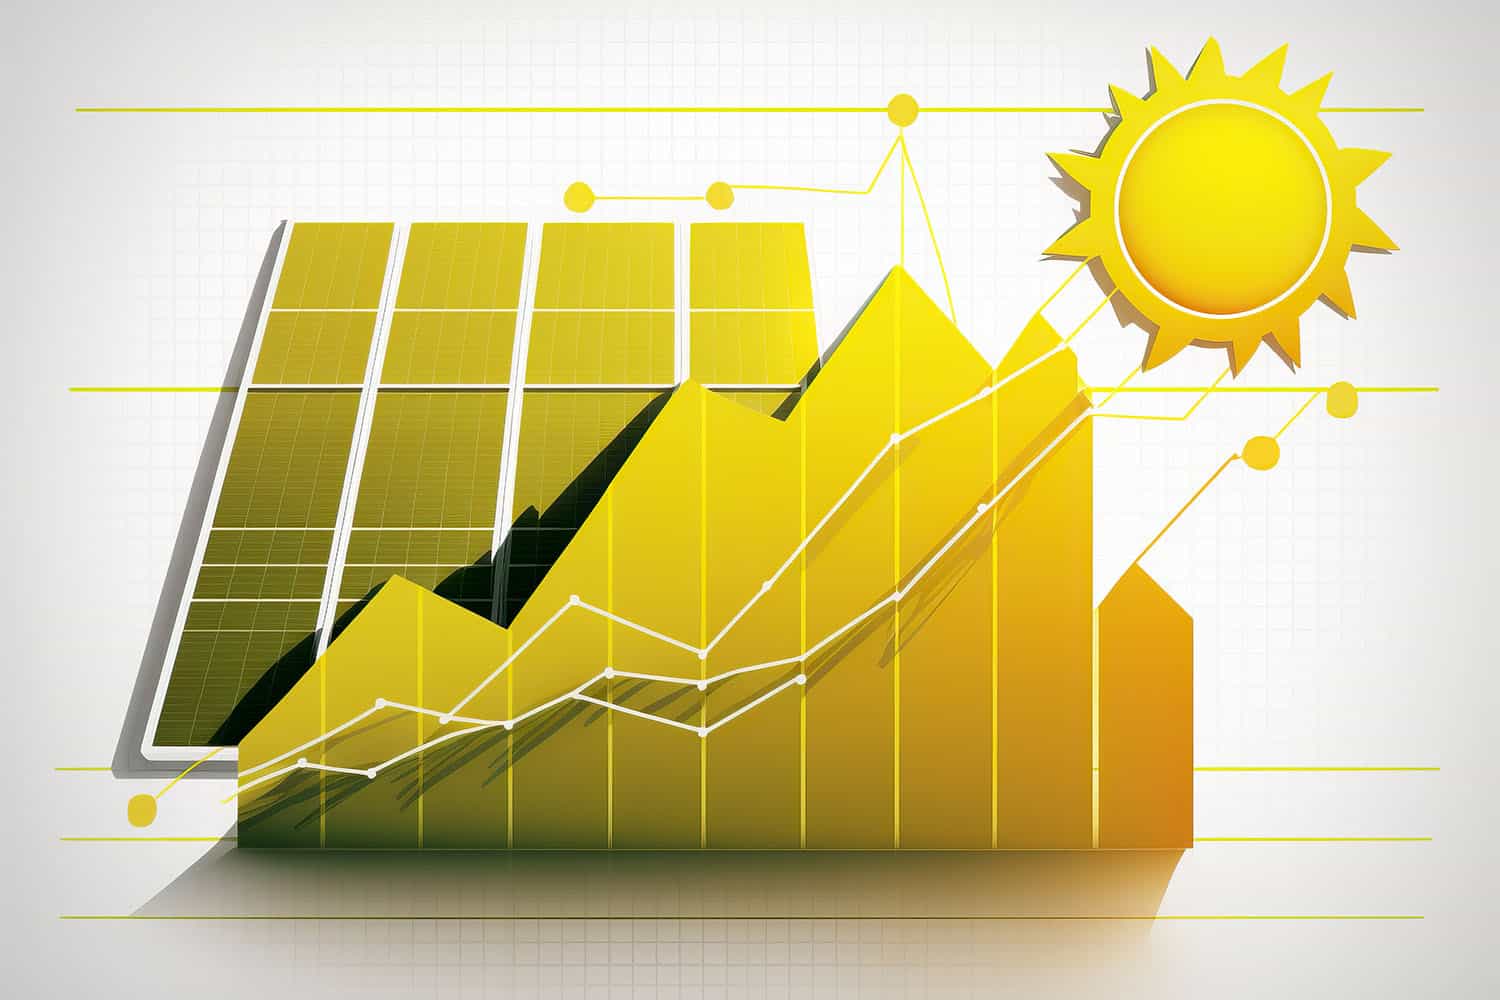 Fotowoltaika – prognozy wskazują na ponad dwudziestokrotny wzrost wykorzystania energii słonecznej do 2050 roku.